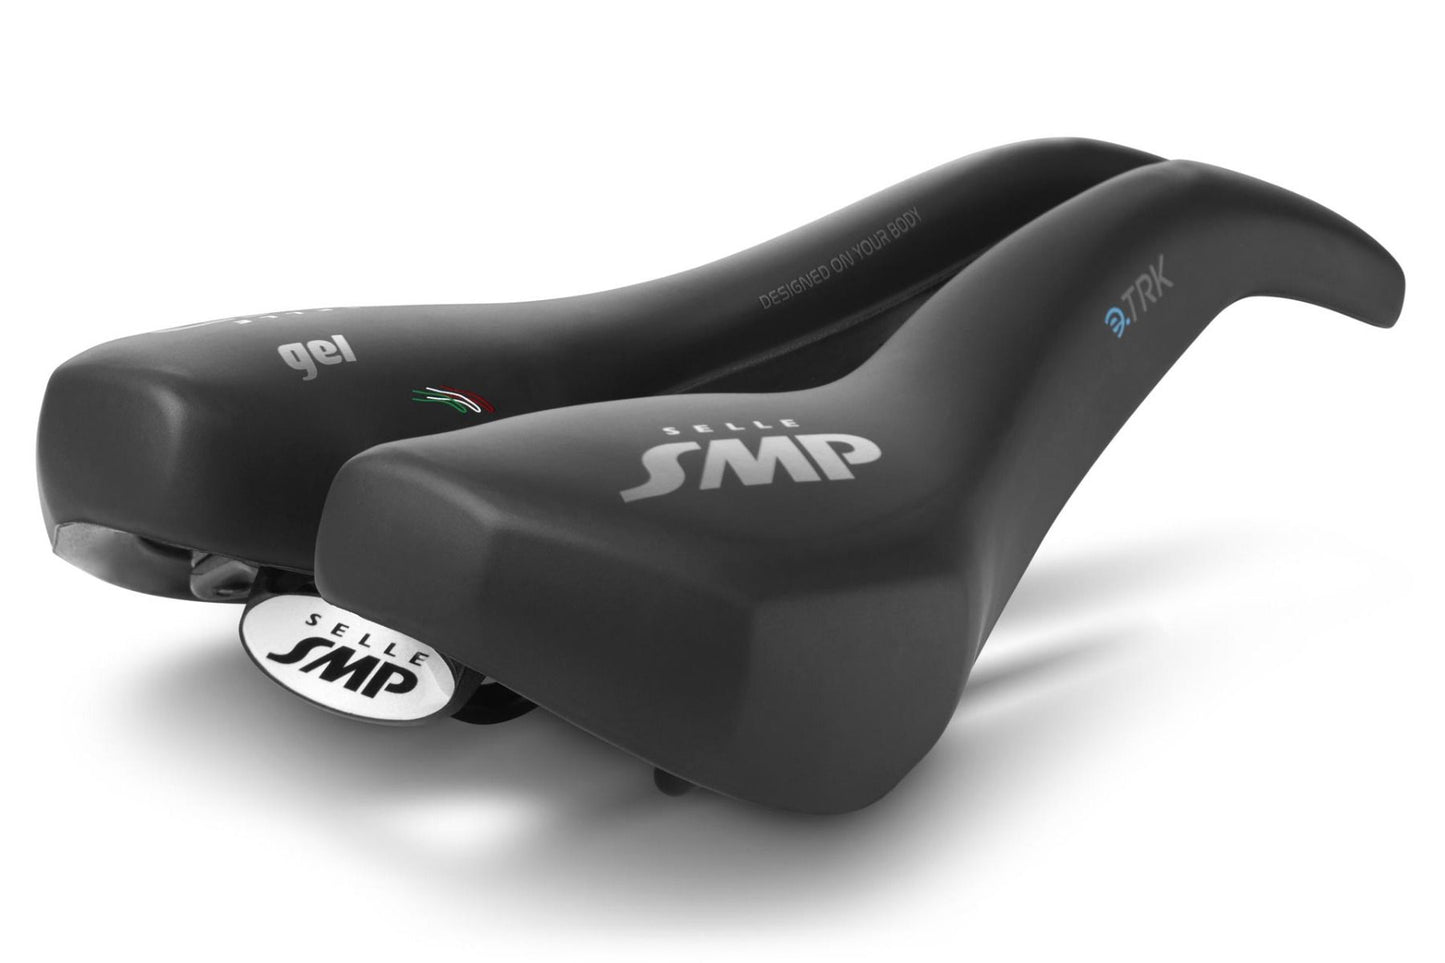 Selle SMP e-TRK Gel Bicycle Saddle (Black)